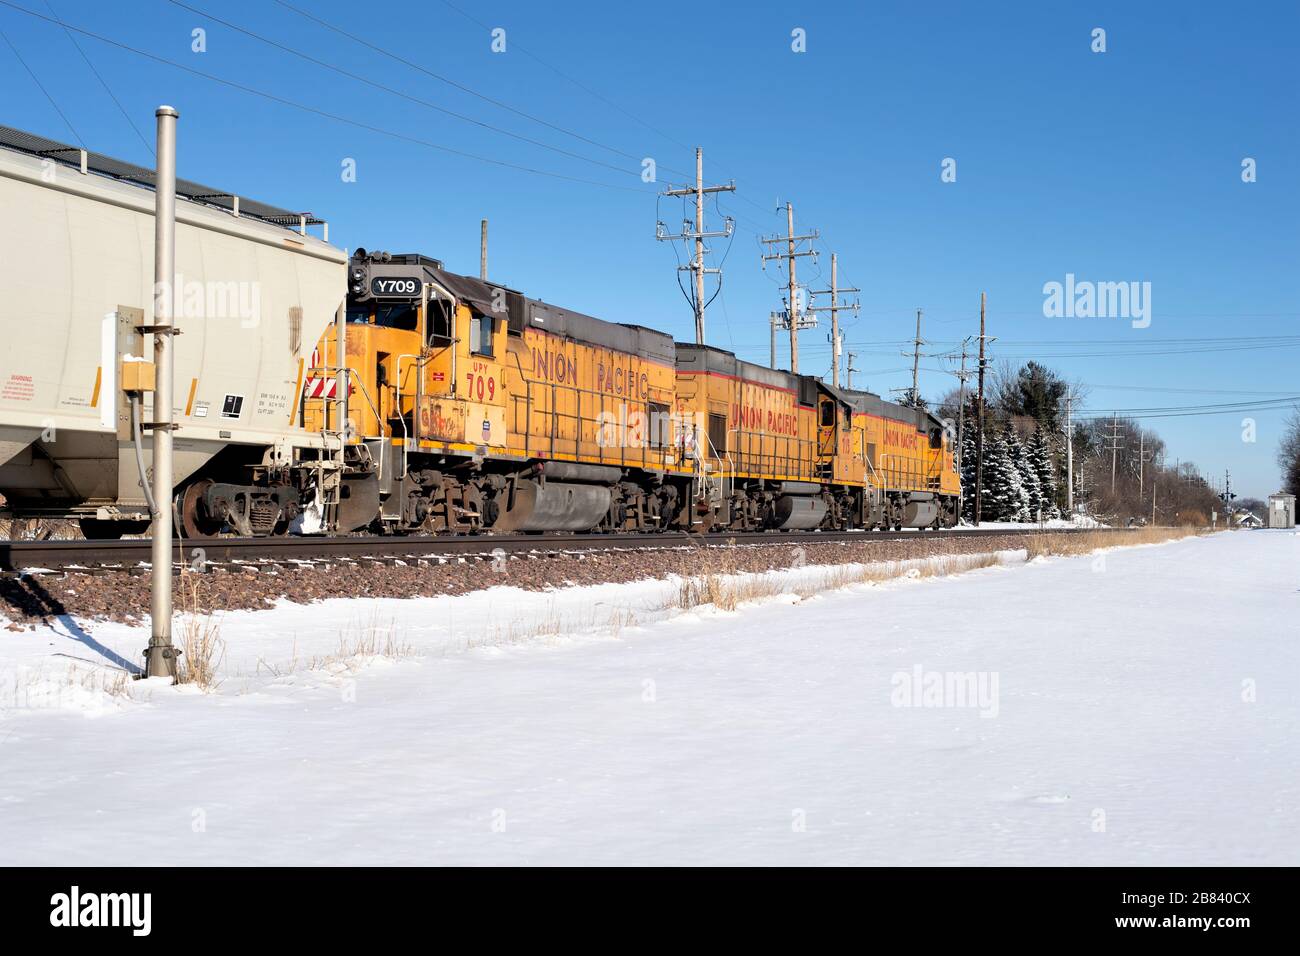 Genf, Illinois, USA. Ein Güterzug der Union Pacific, der von drei Lokeinheiten bei Genf, Illinois, auf seiner Ostfahrt nach Chicago geführt wird. Stockfoto